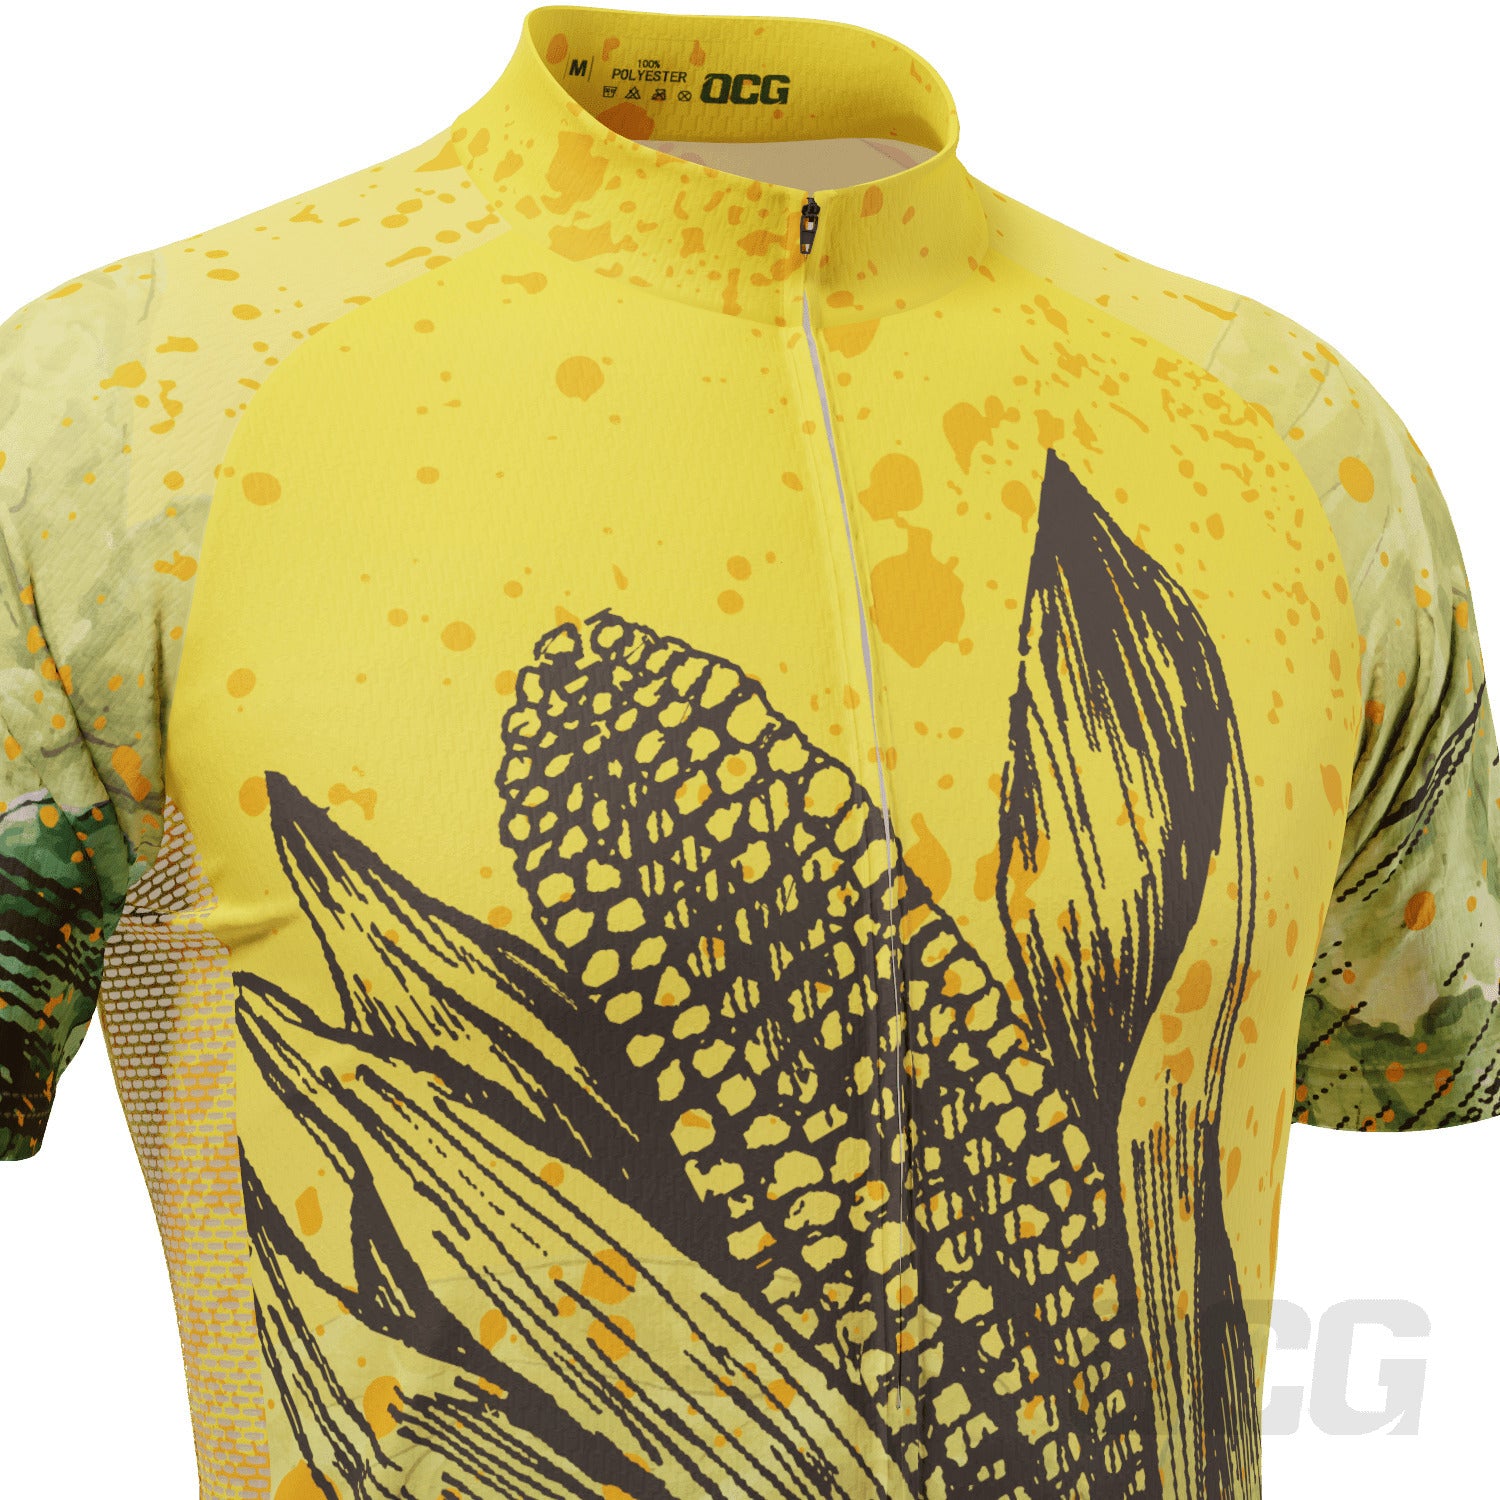 Men's Corny Short Sleeve Cycling Jersey